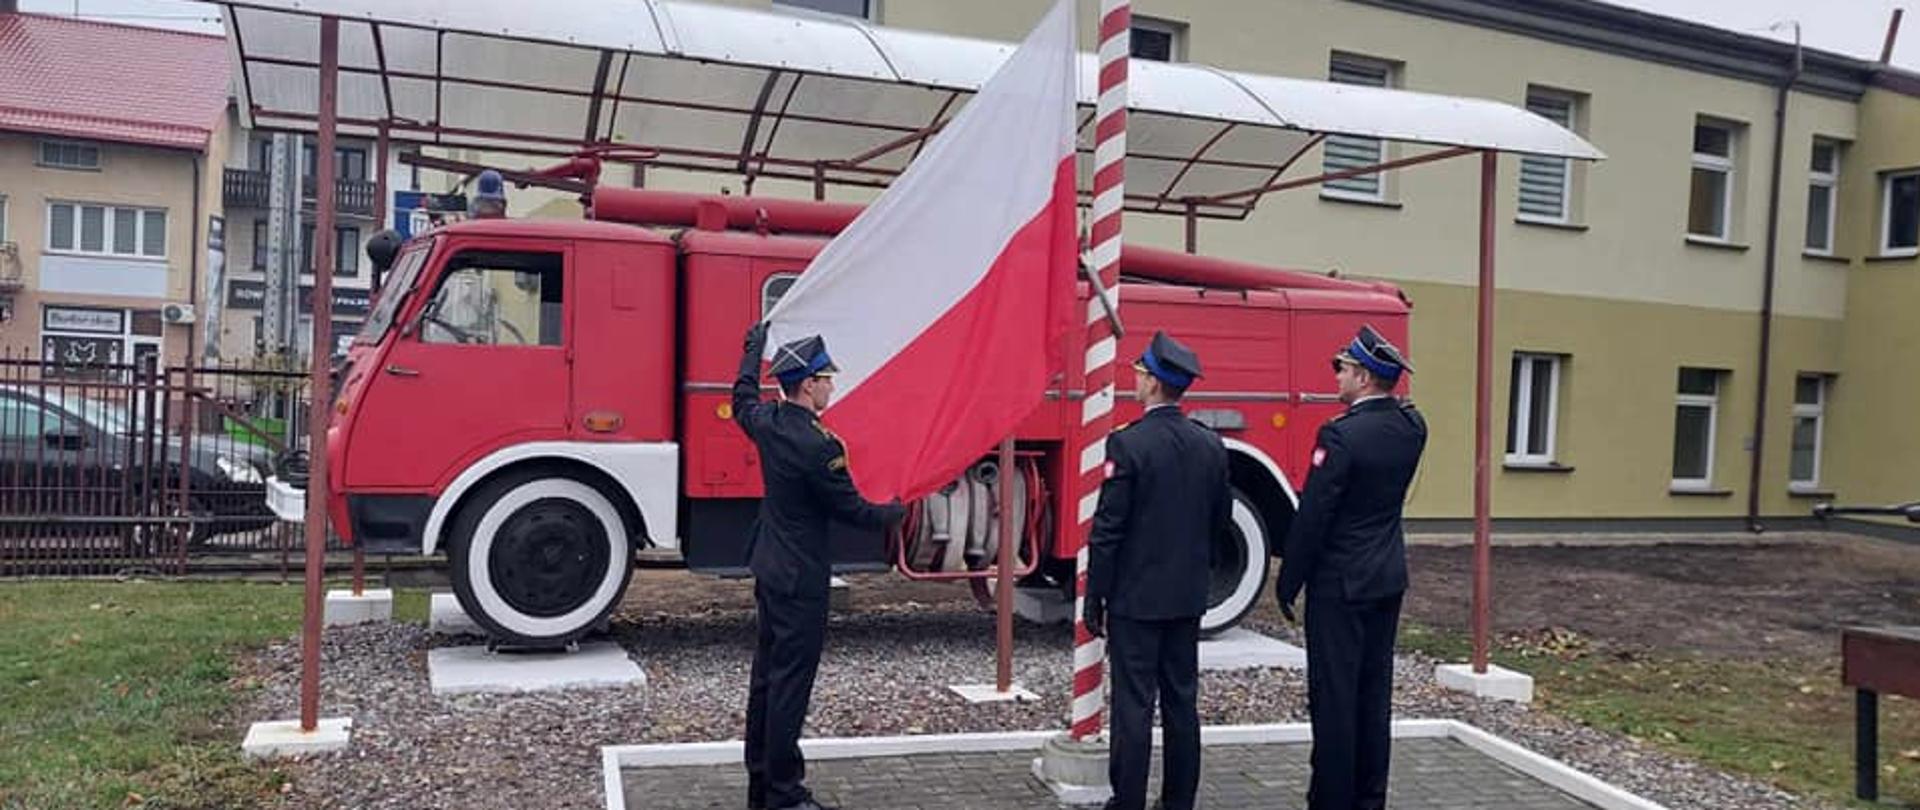 Poczet flagowy stoi przed masztem, do którego przyczepili flagę Polski. Jeden z funkcjoanriuszy prezentuje flagę. W tle widać zabytkowy samochód strażacki.